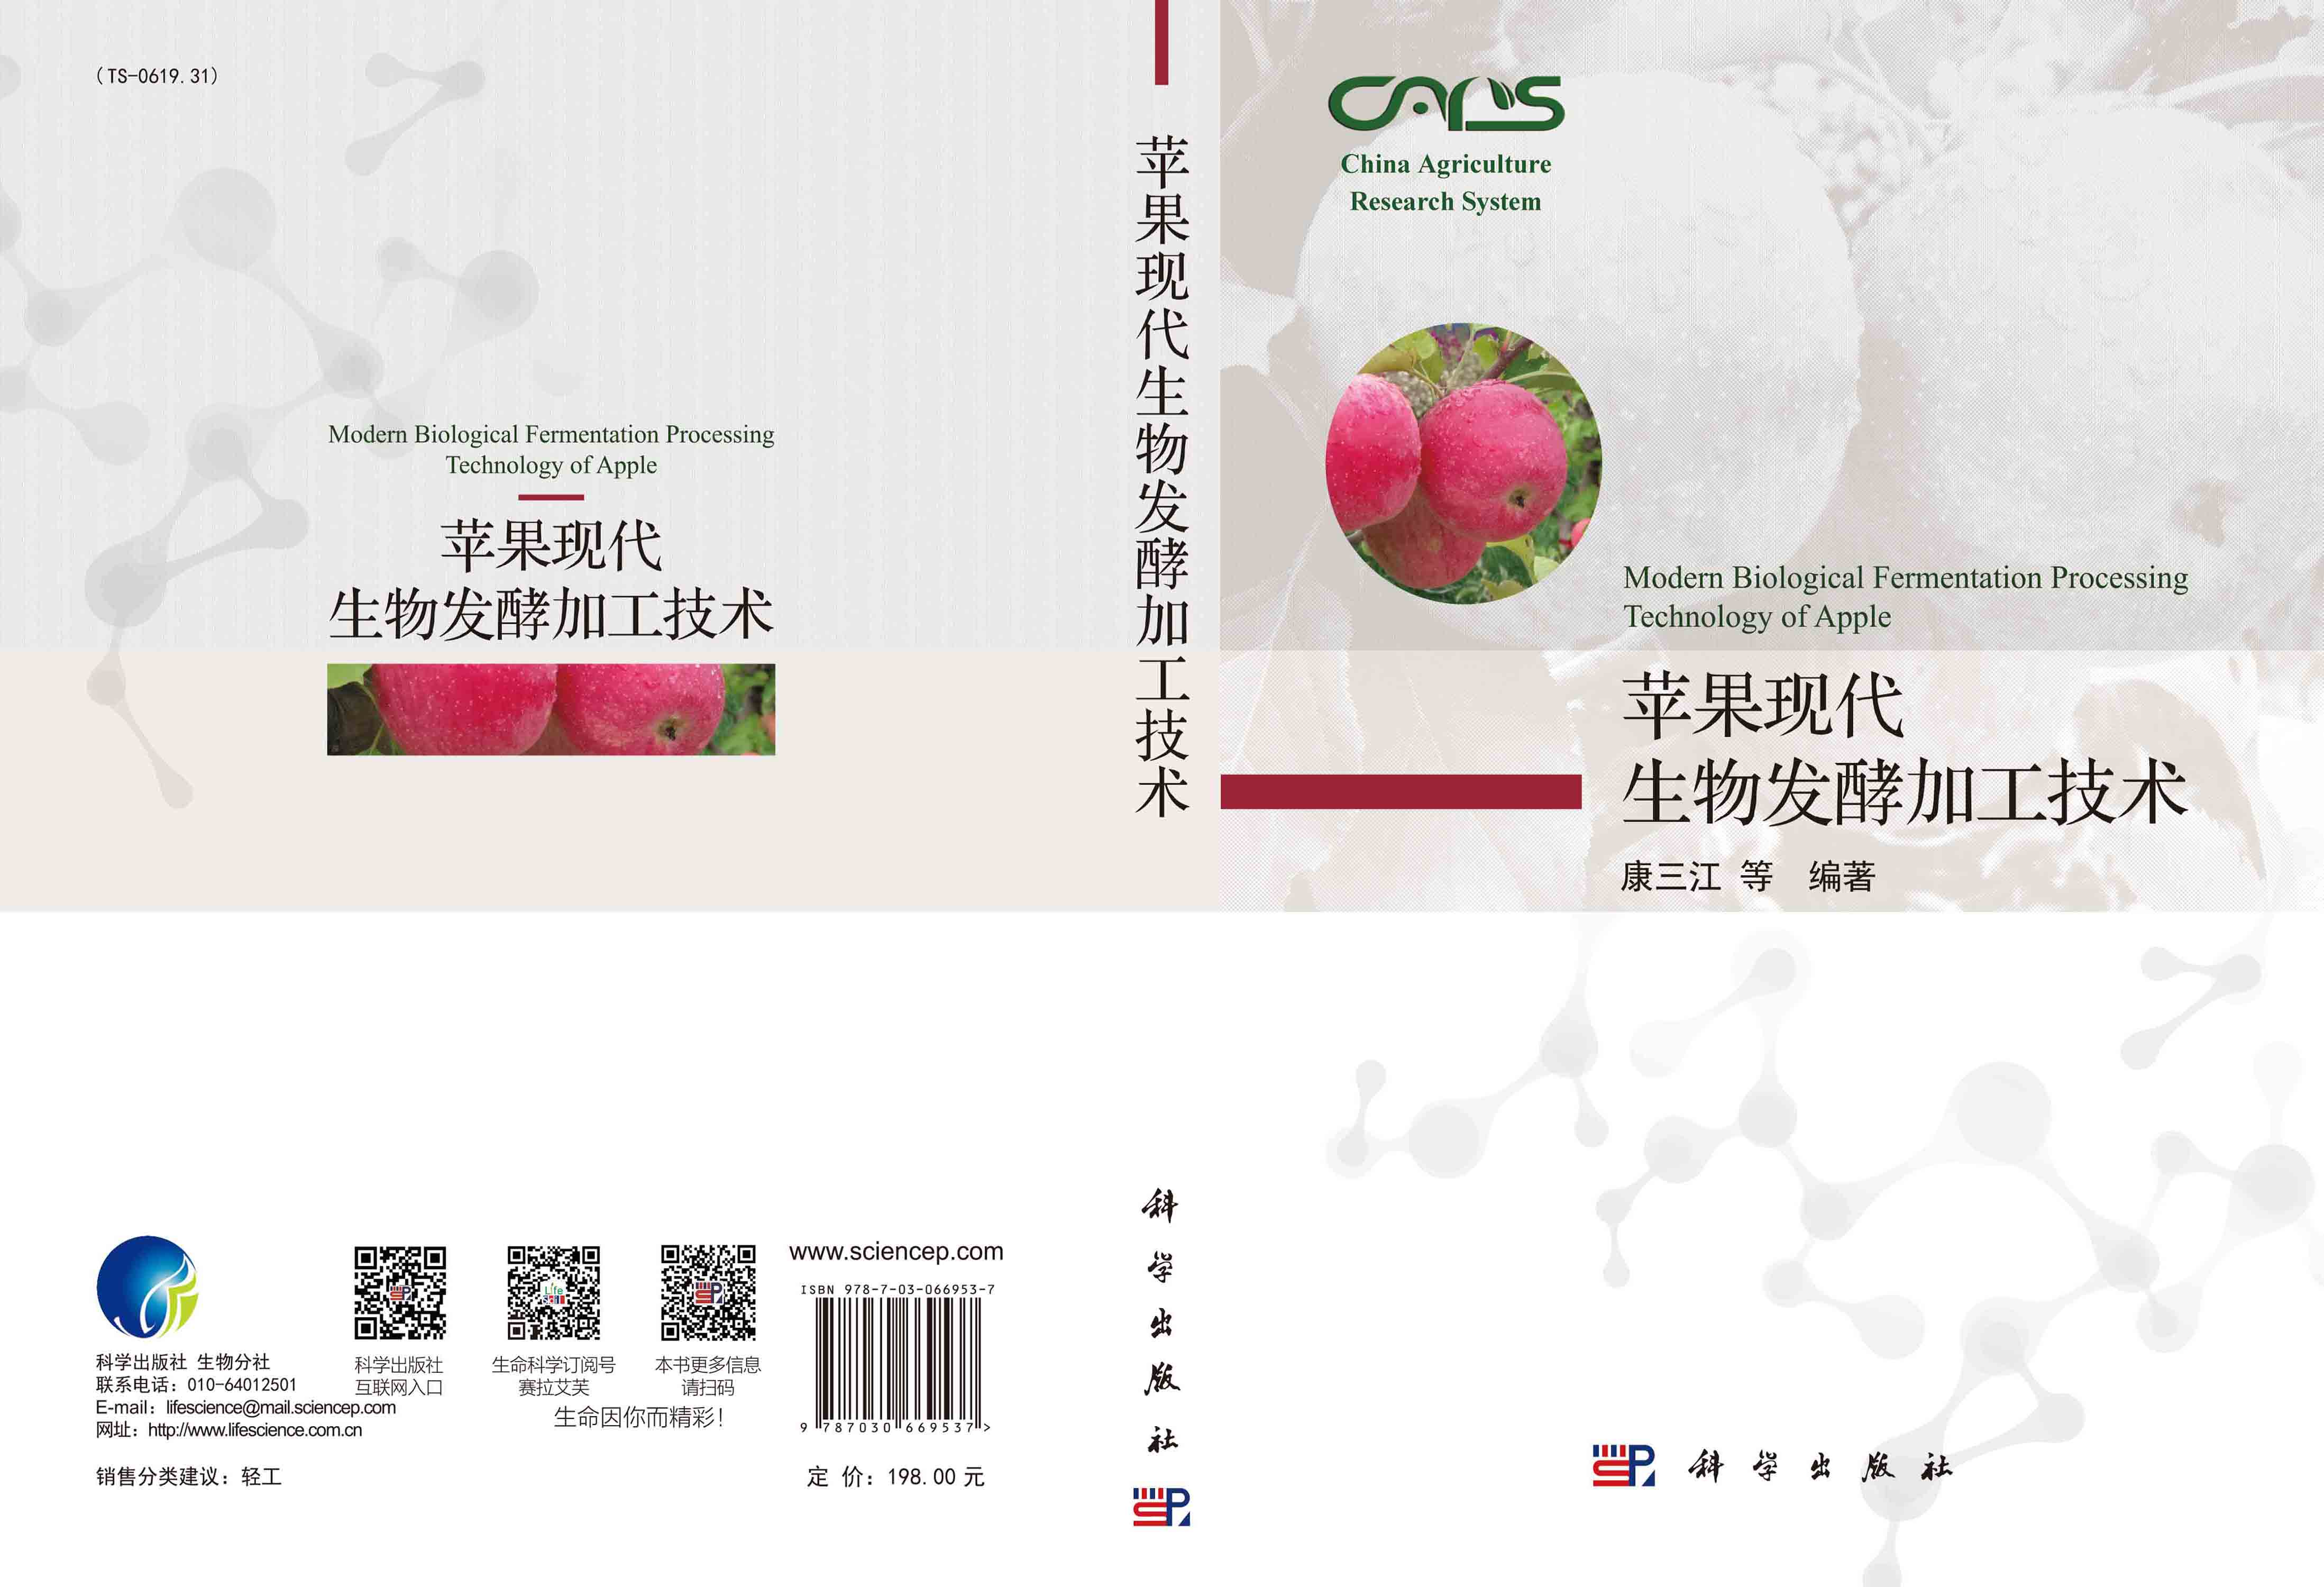 苹果现代生物发酵加工技术